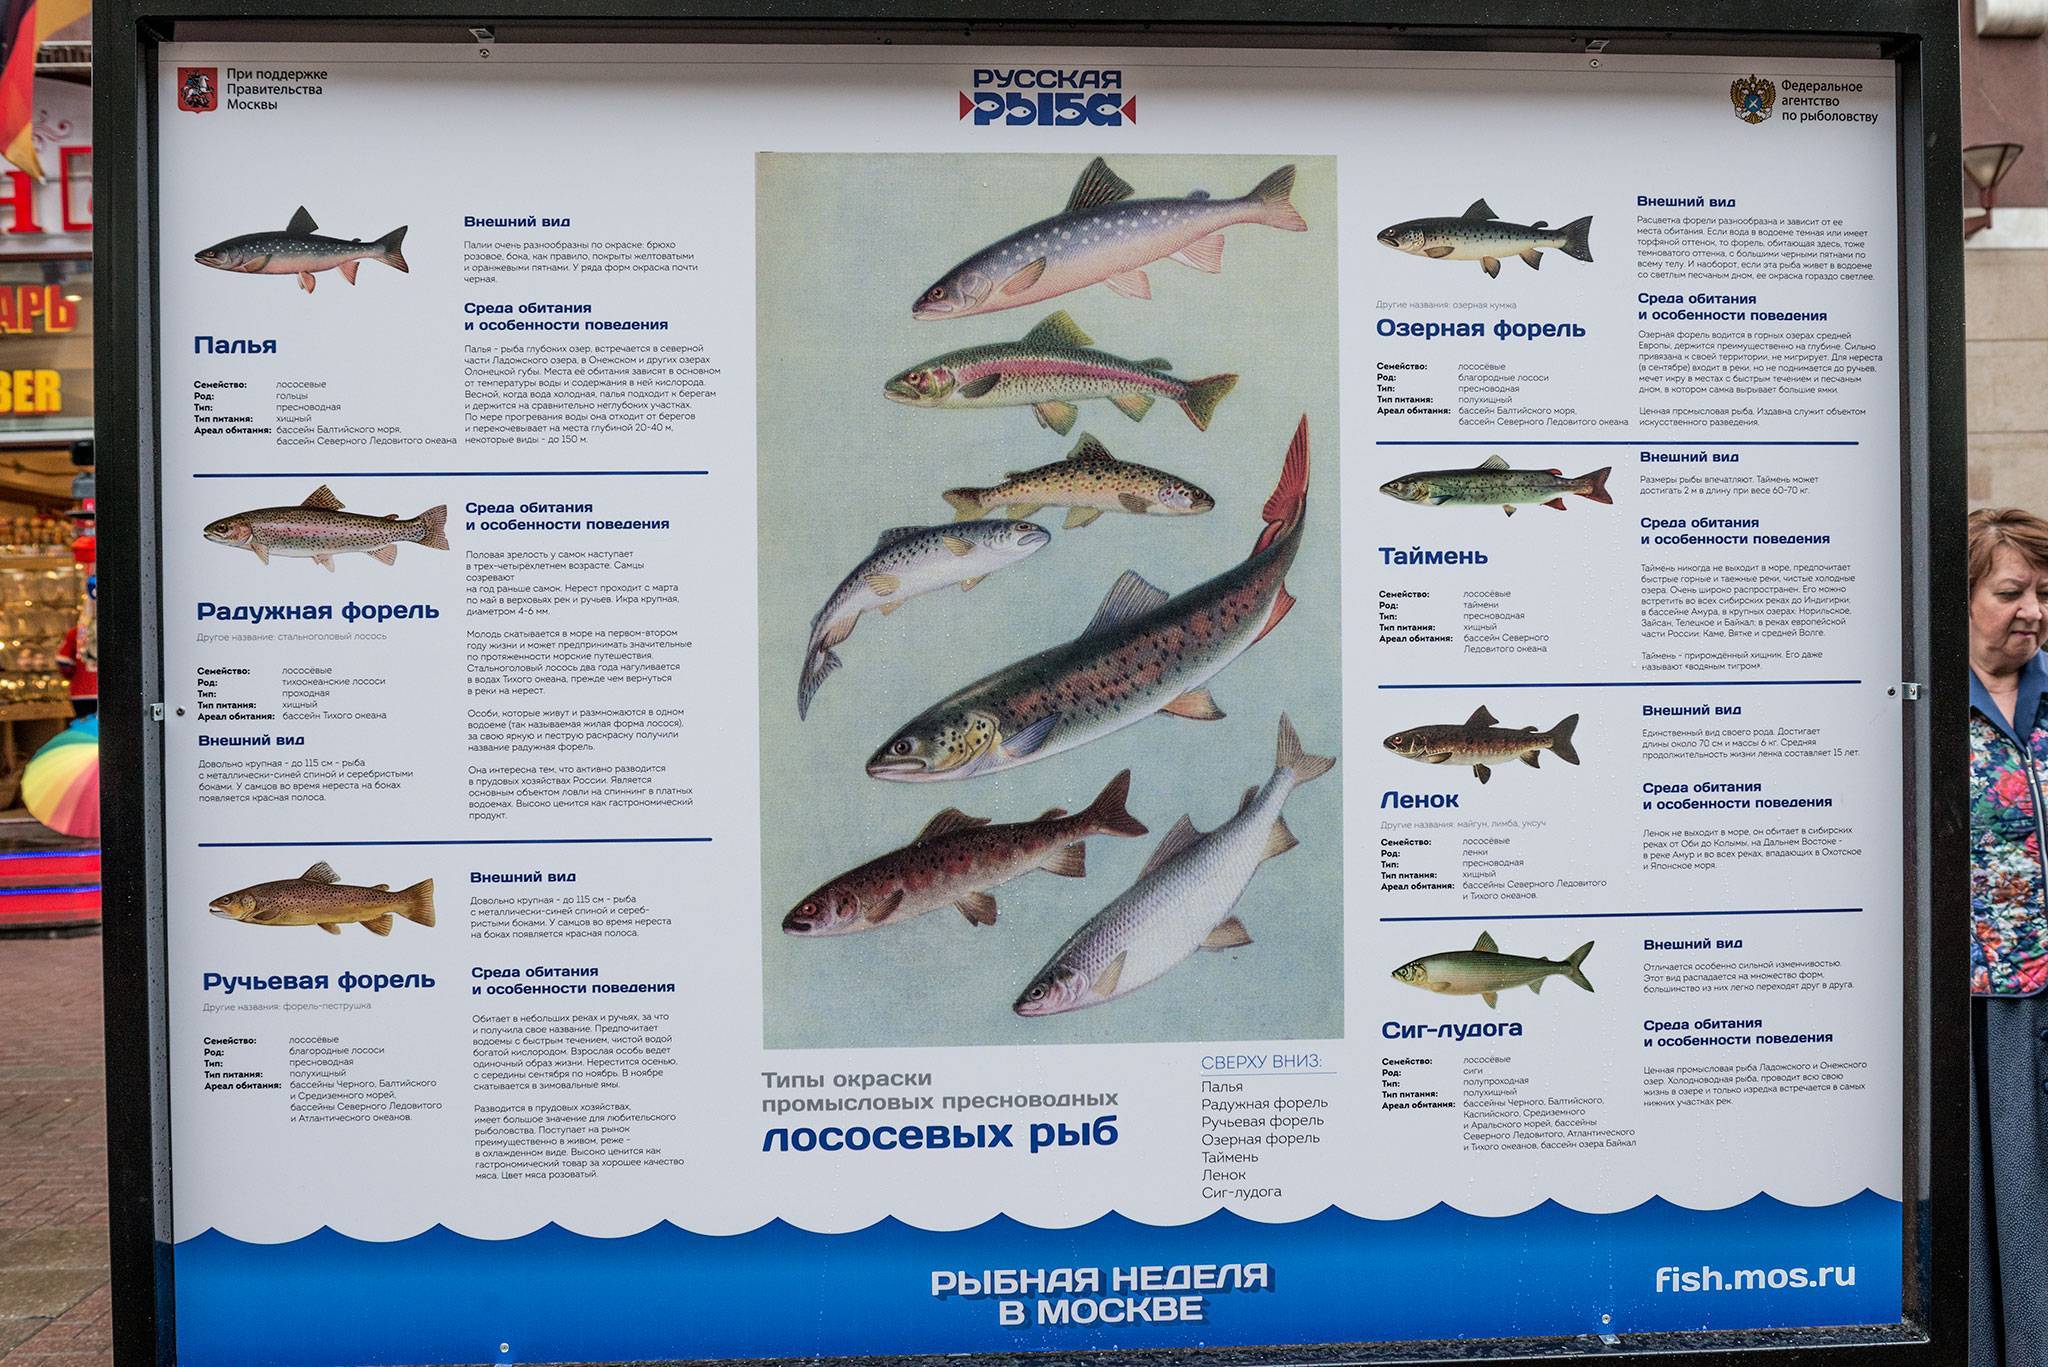 Список рыб россии с названиями и фото, морские и пресноводные рыбы российской федерации